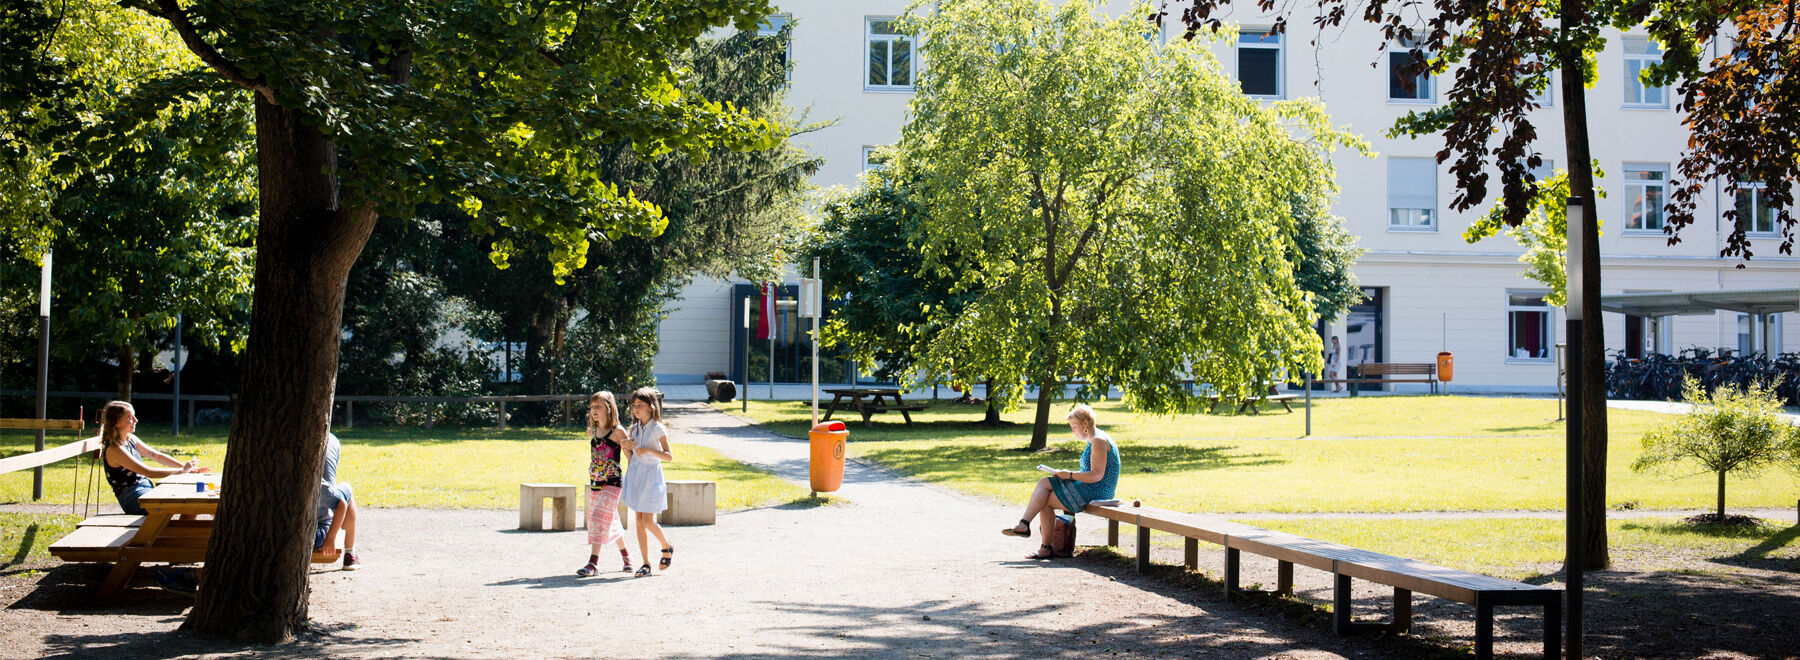 Studieren und wohnen in Graz: Freie Plätze in Student*innenheimen